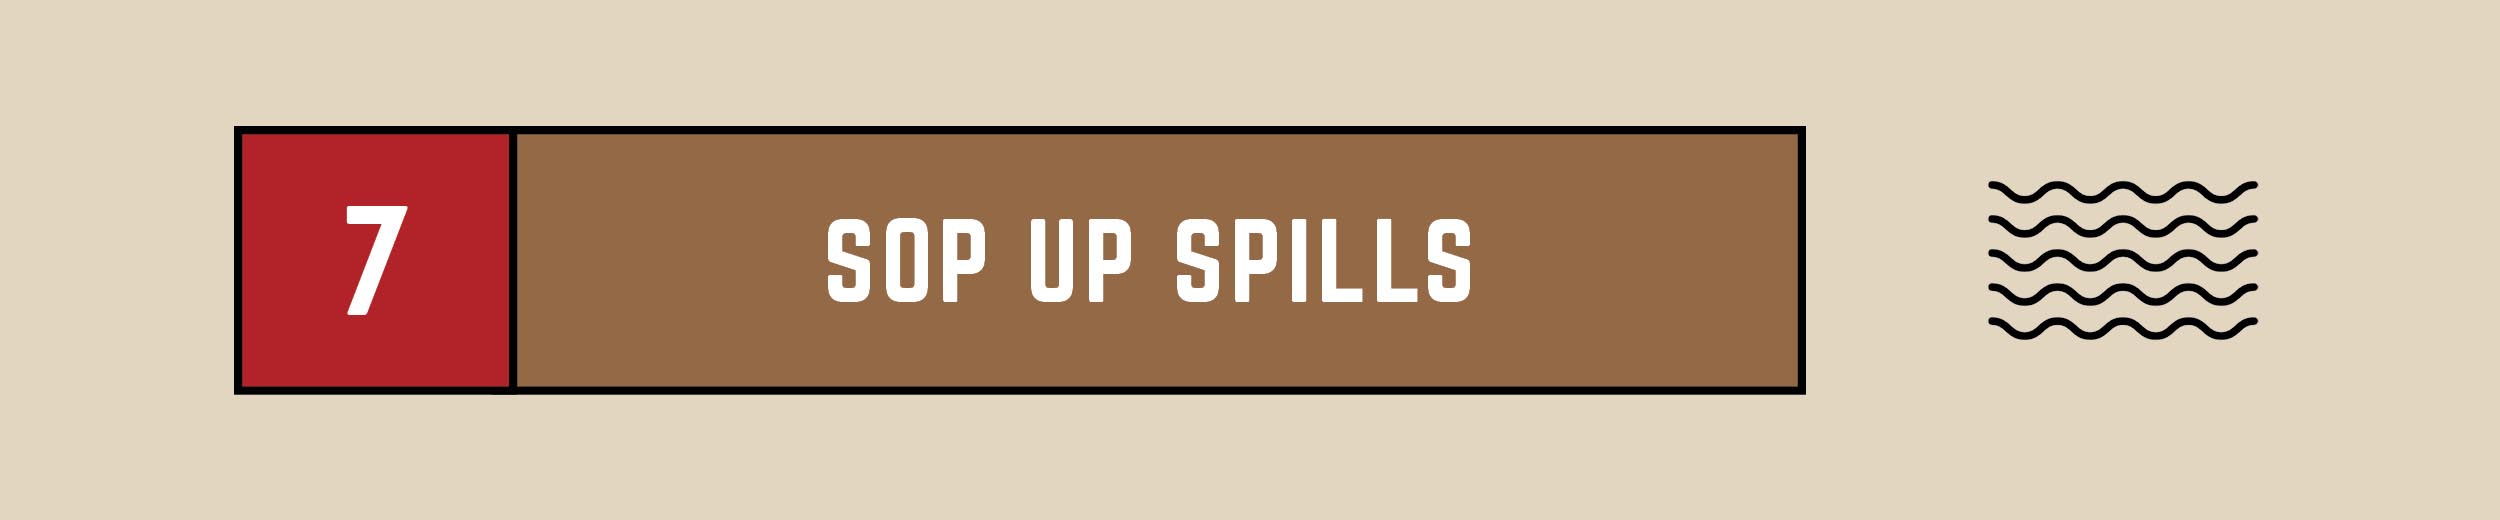 sop up spills text